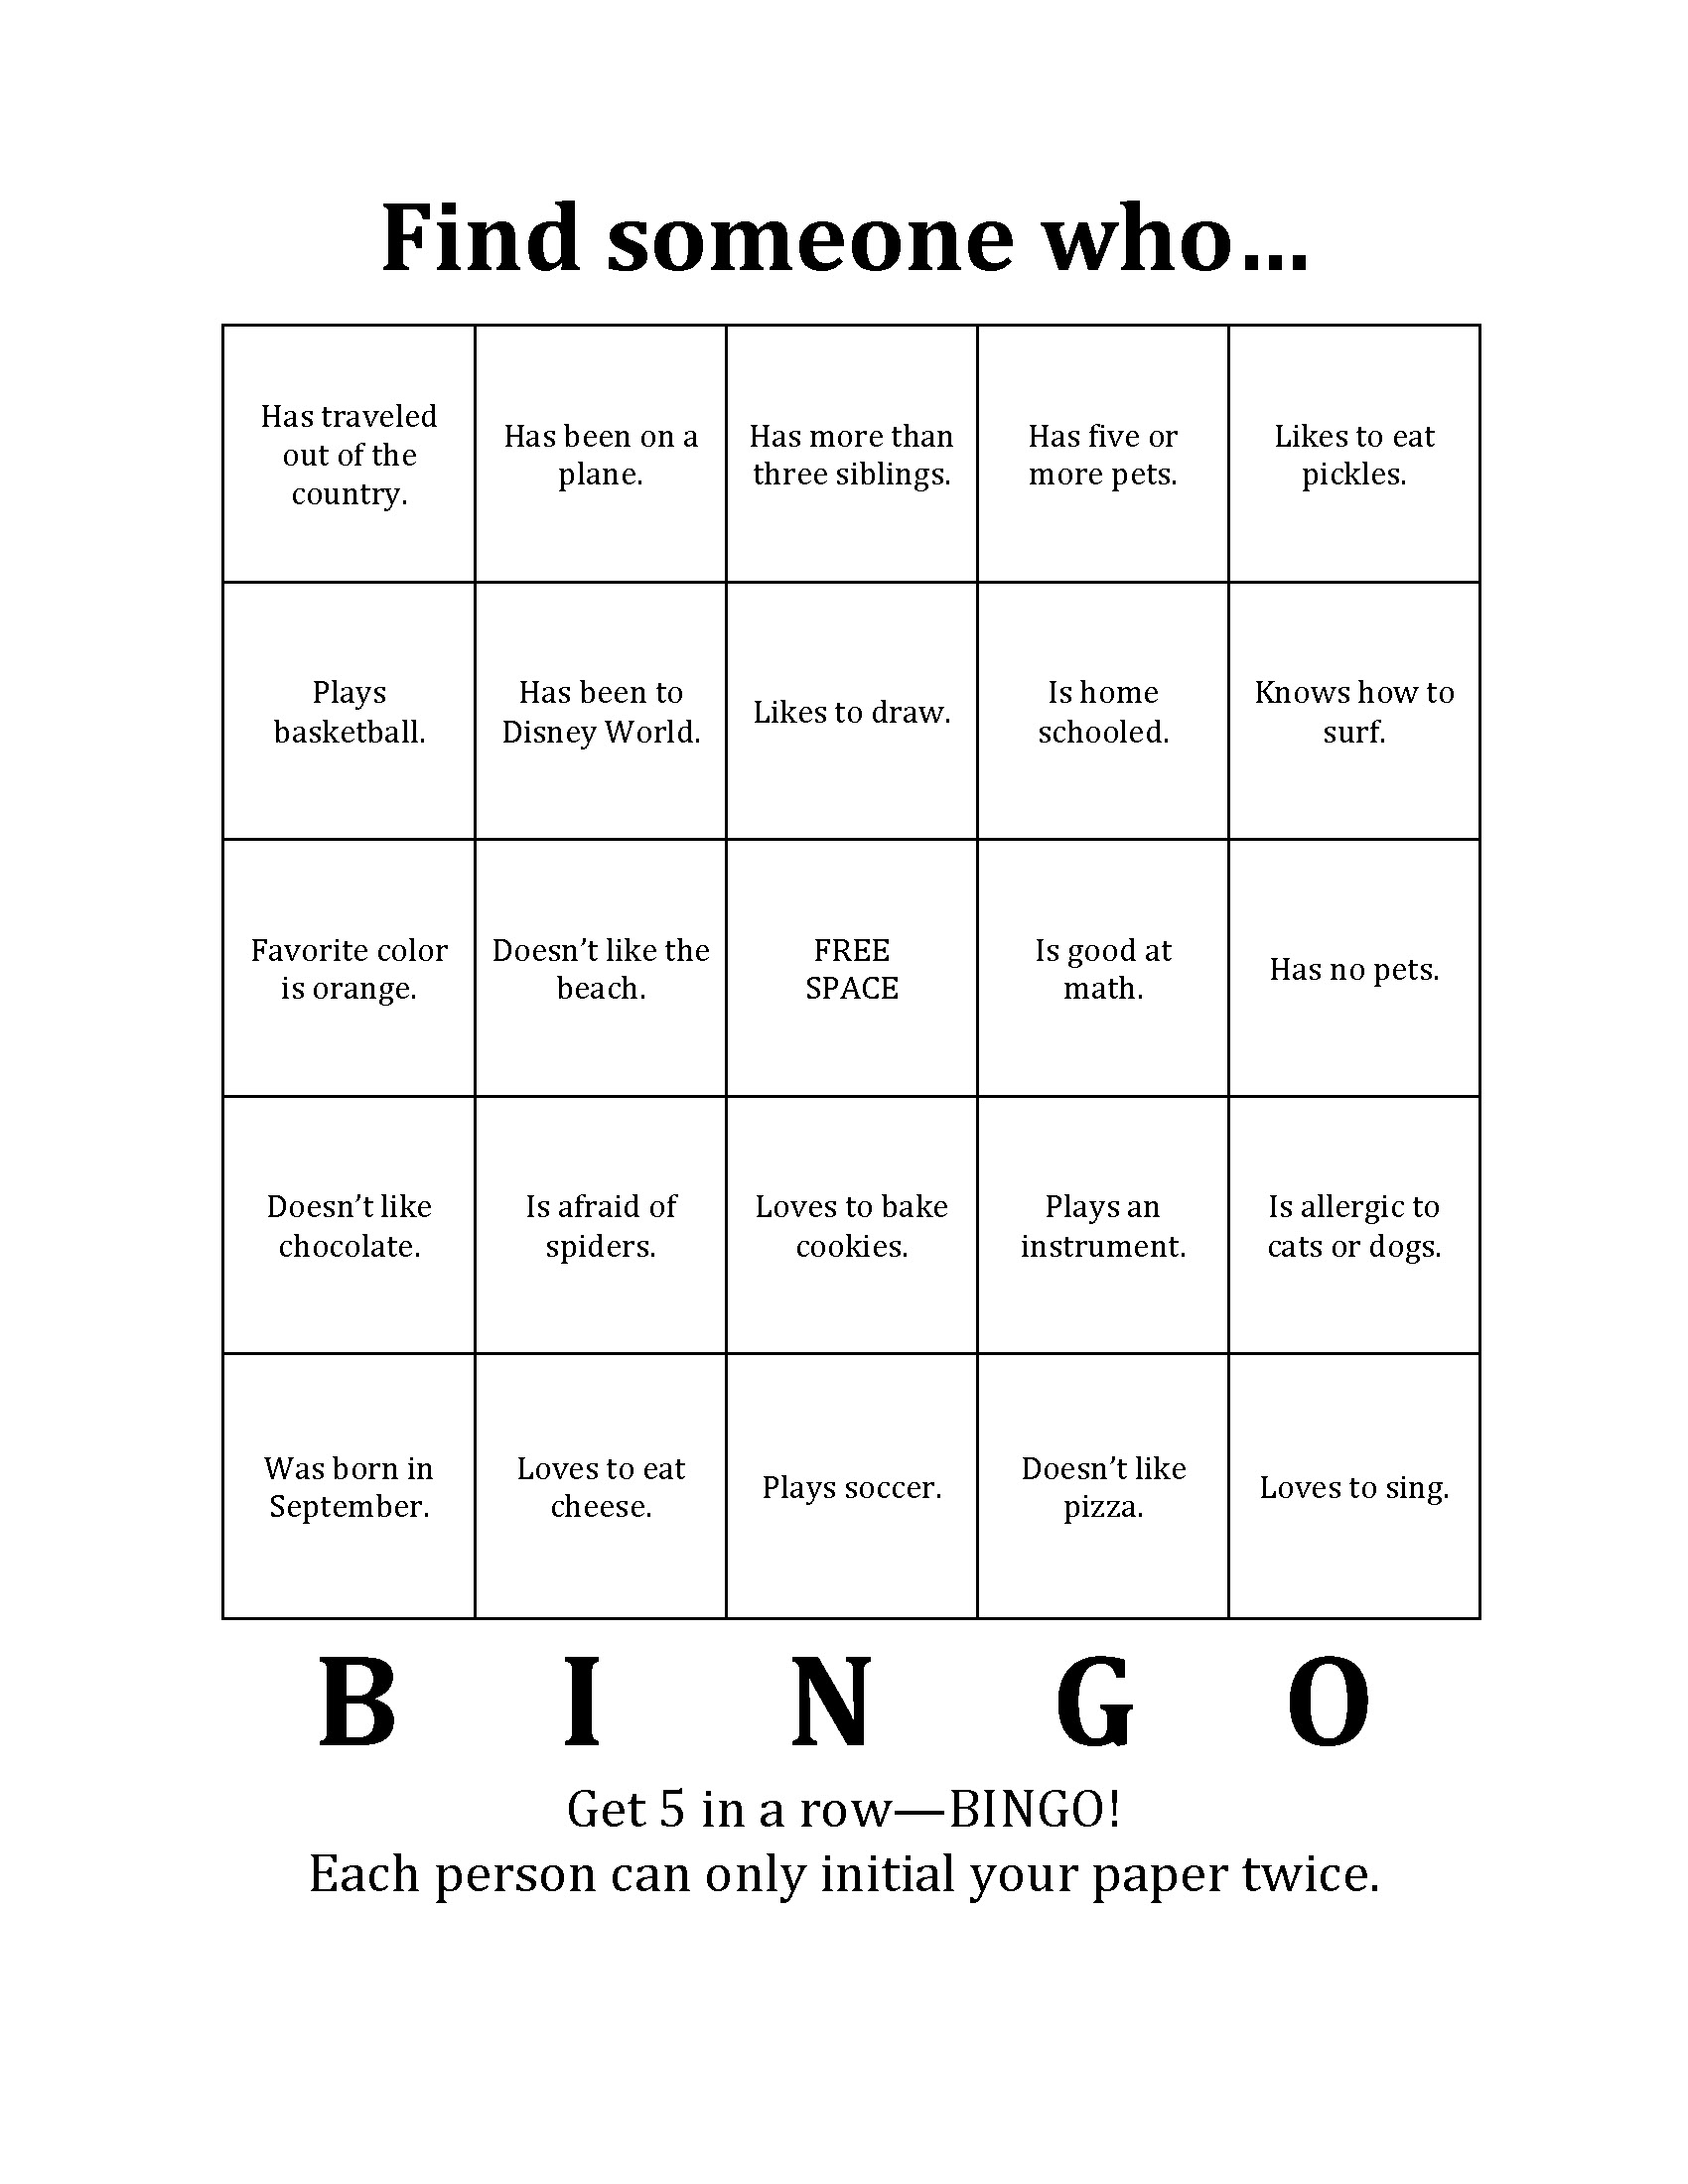 Bingo other to know get each Virtual bingo